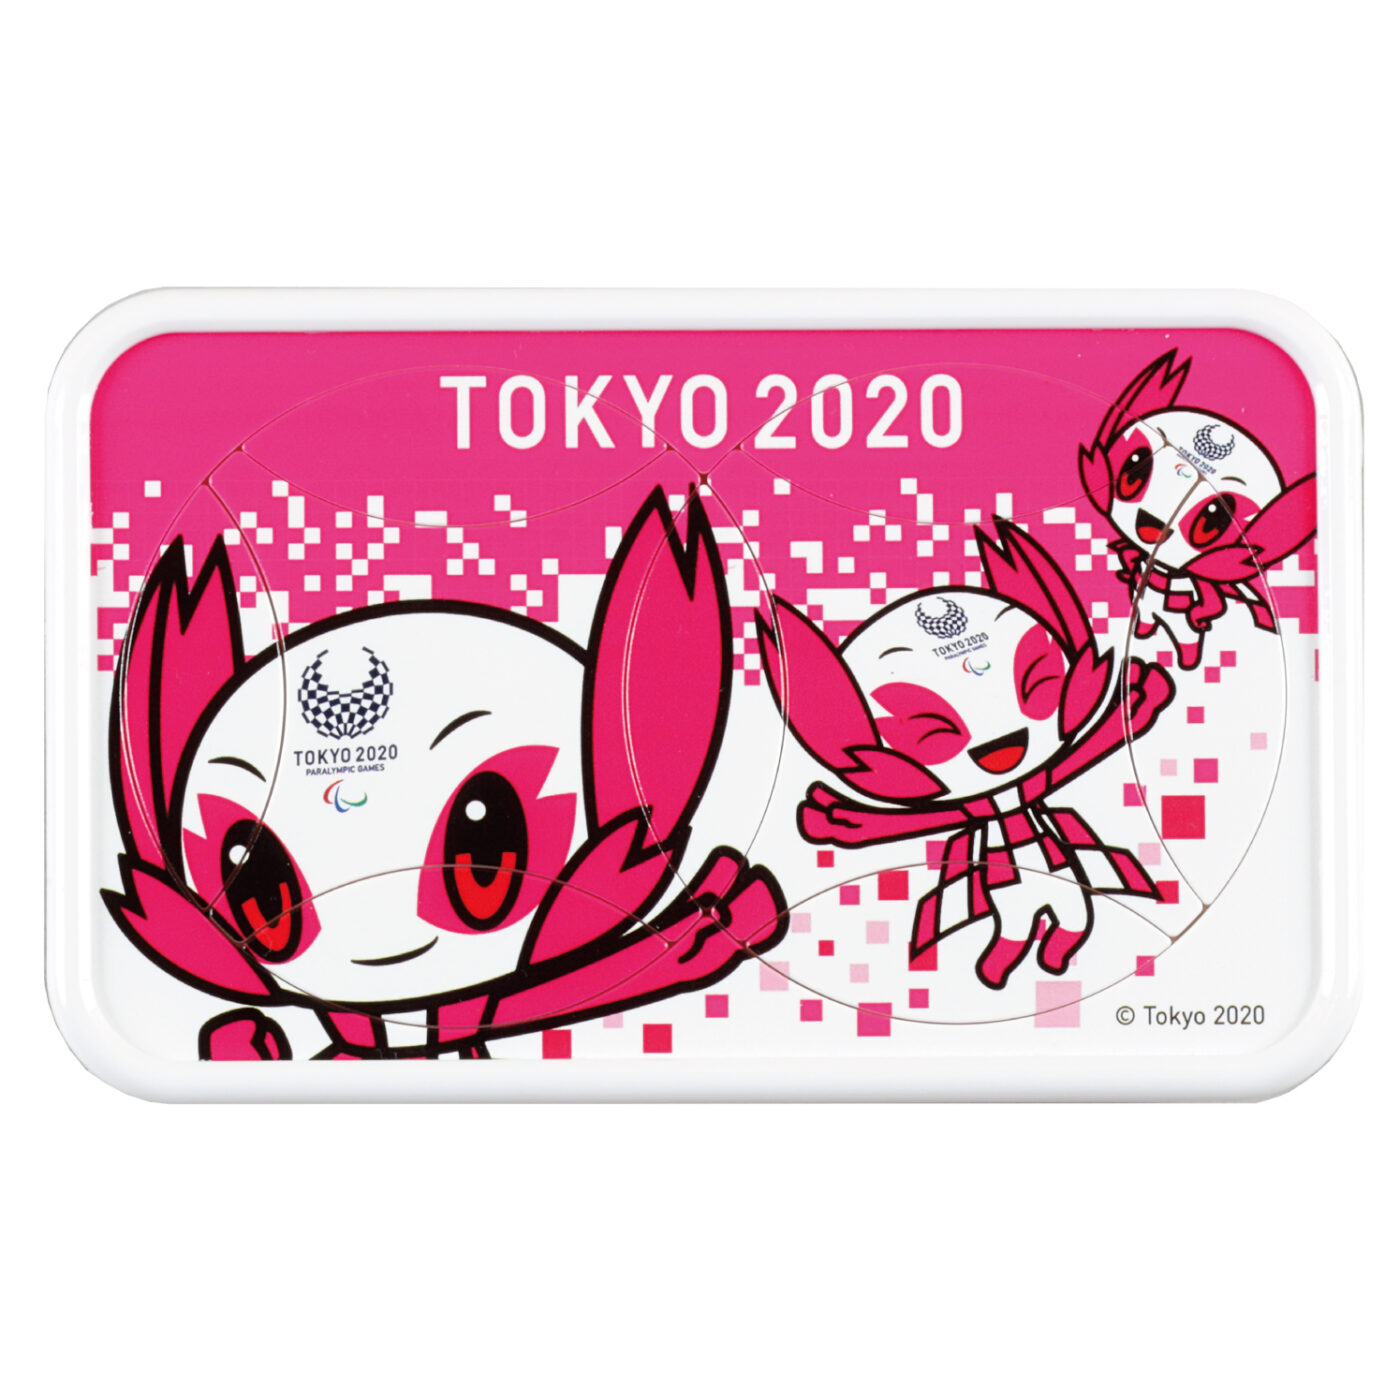 東京2020 パラリンピックマスコット ソメイティ 回転絵合わせパズル02の商品画像